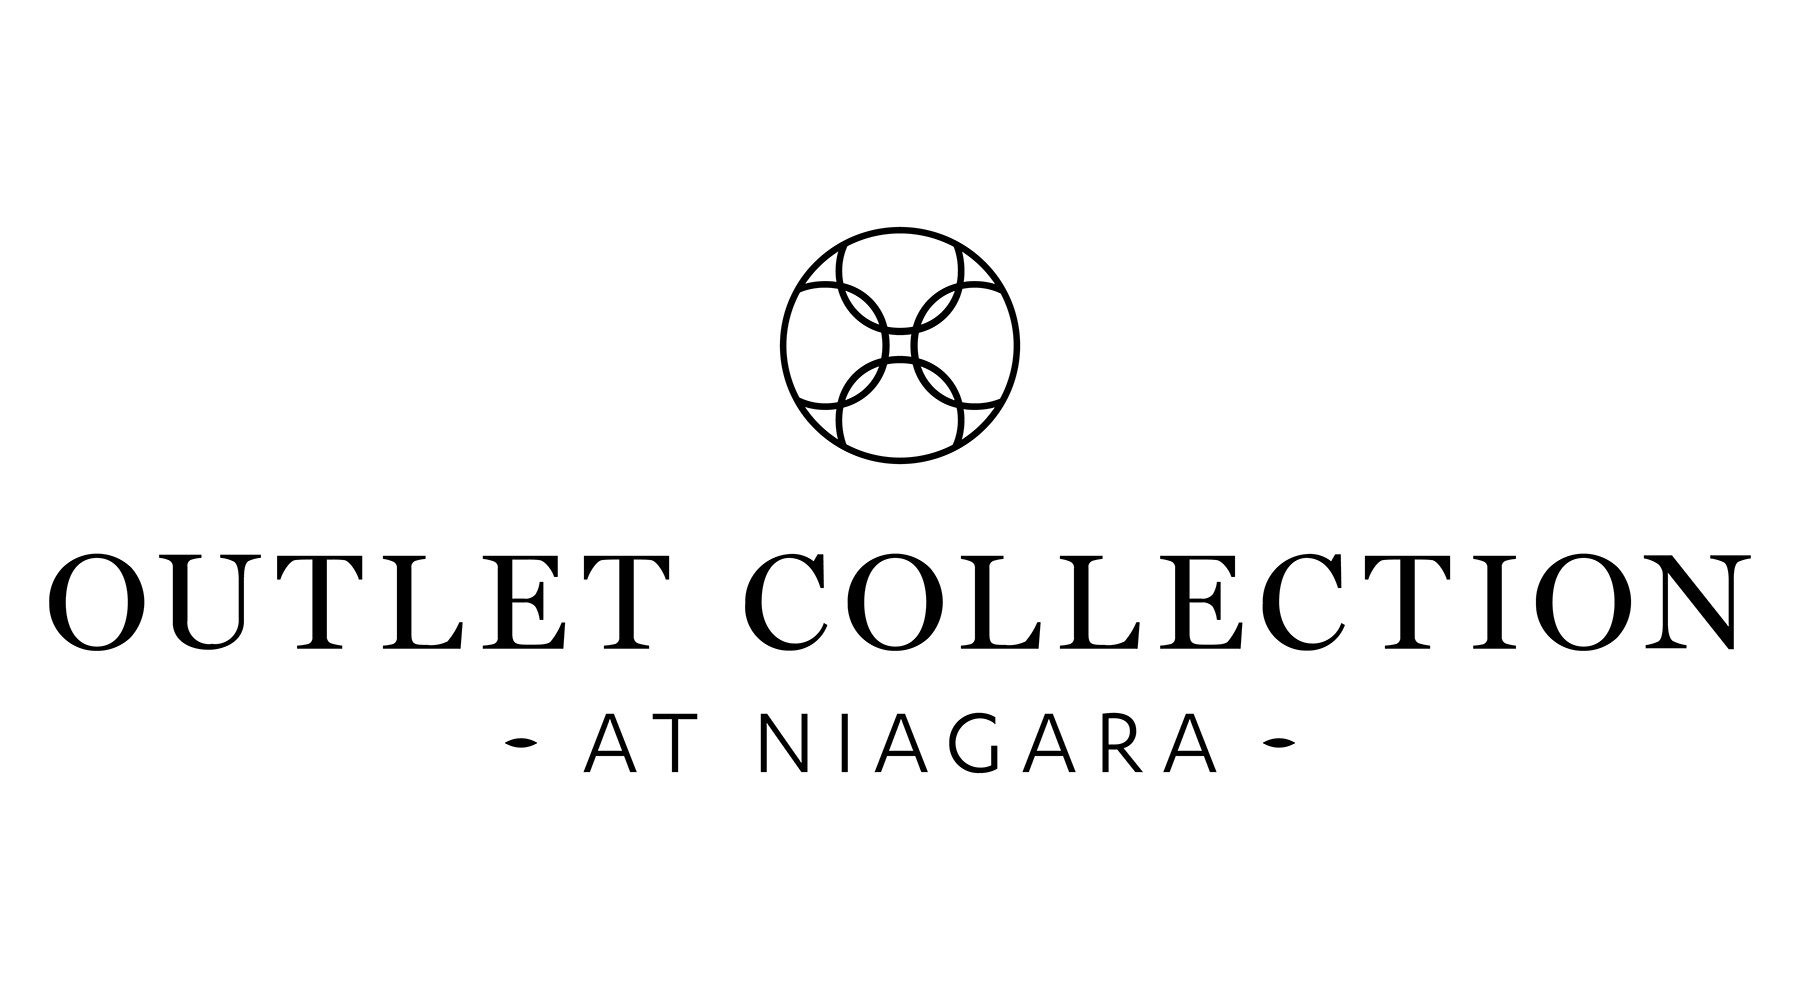 Outlet Collection at Niagara